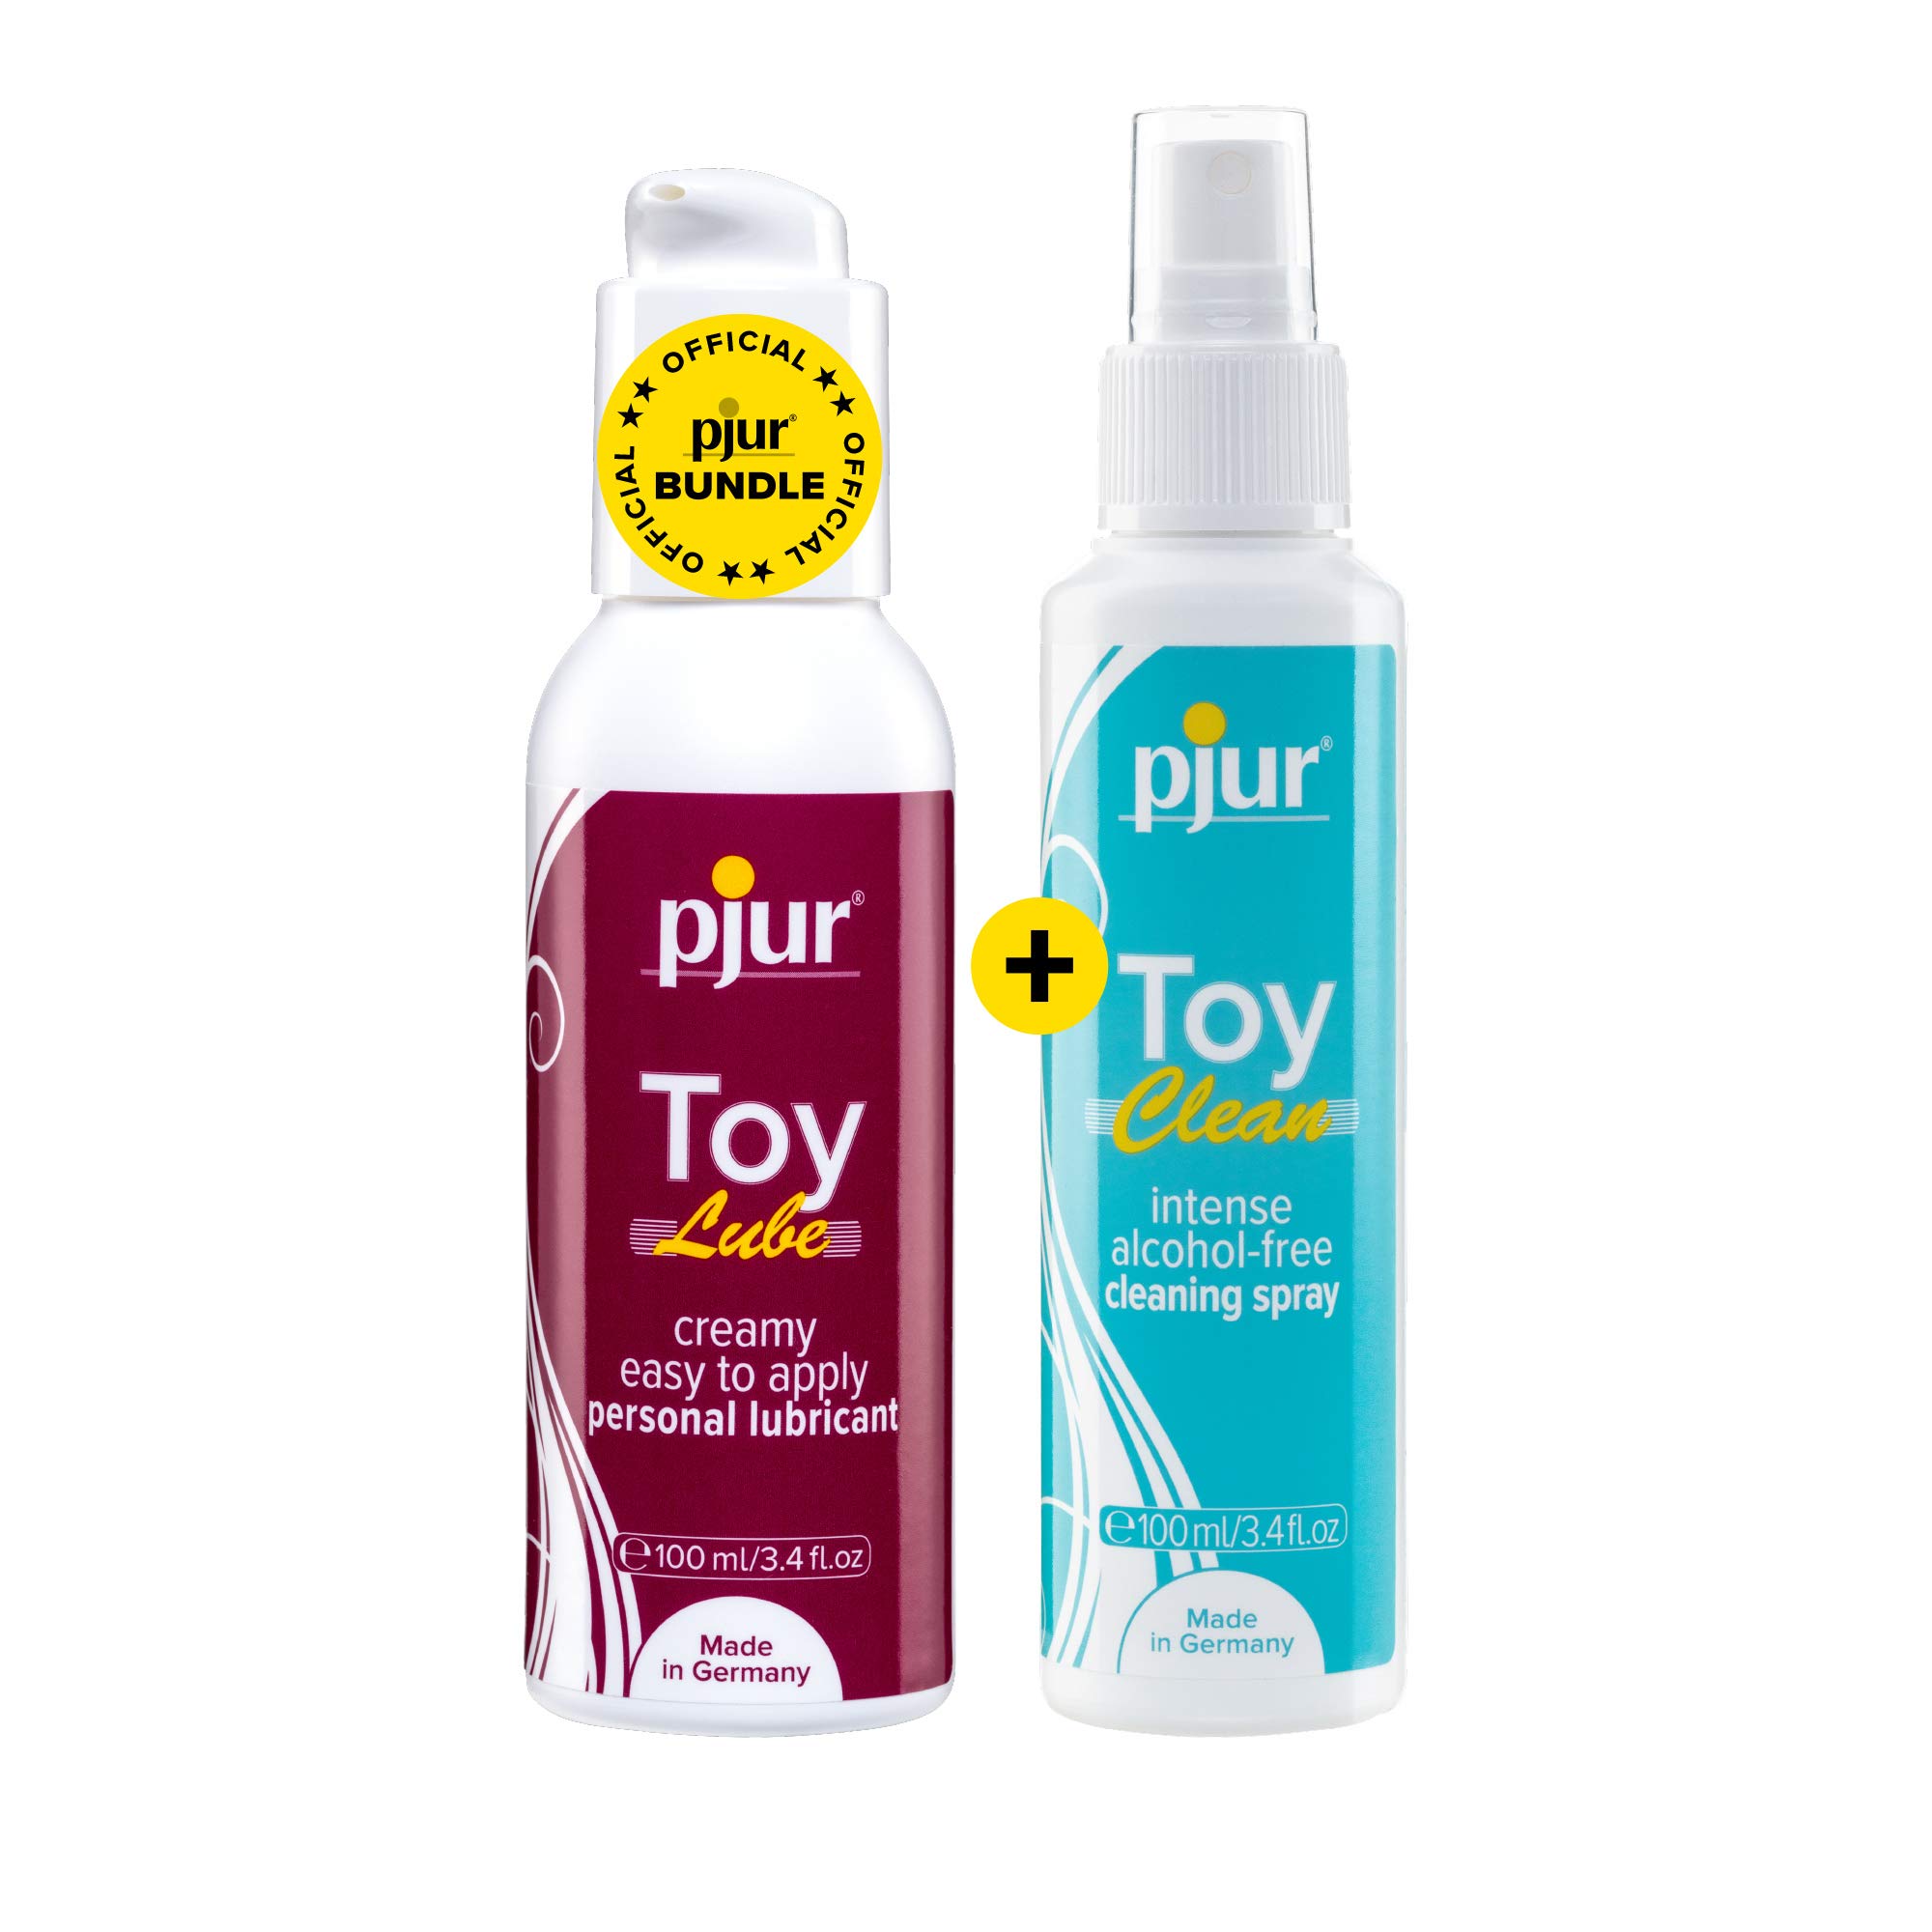 pjur TOY LUBE & Clean - Vorteilspack inkl. tropf-freiem Gleitgel (100ml) und Reinigungsspray (100ml) - für alle Erotik- & Sextoys geeignet